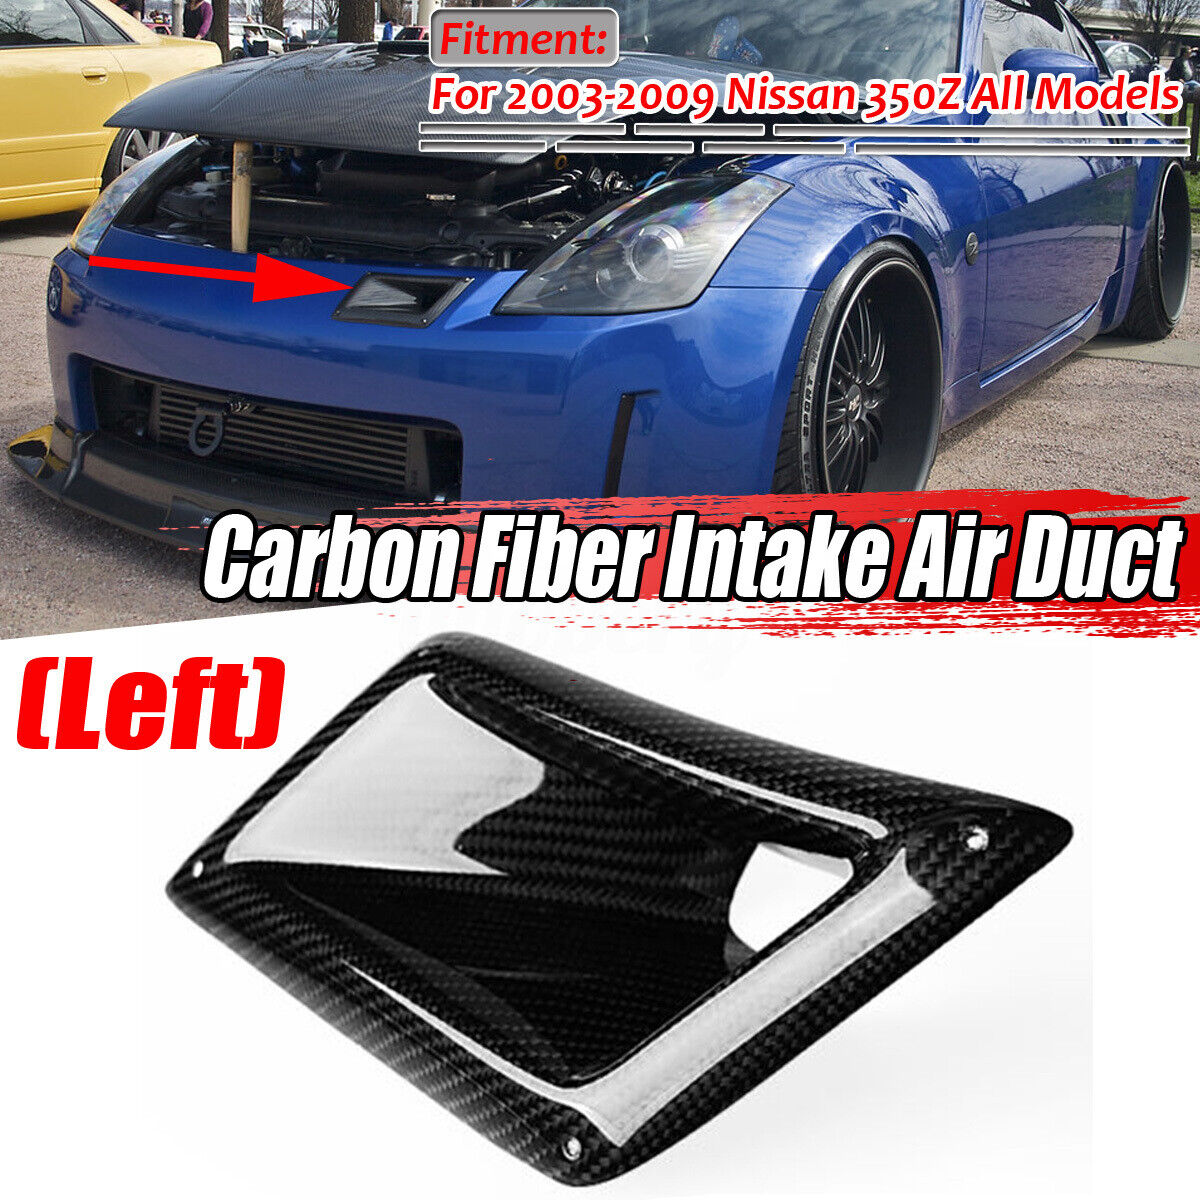 Bumper Carbon Fiber Air Vent Intake Duct Left Side For Nissan 350Z Z33 03-09